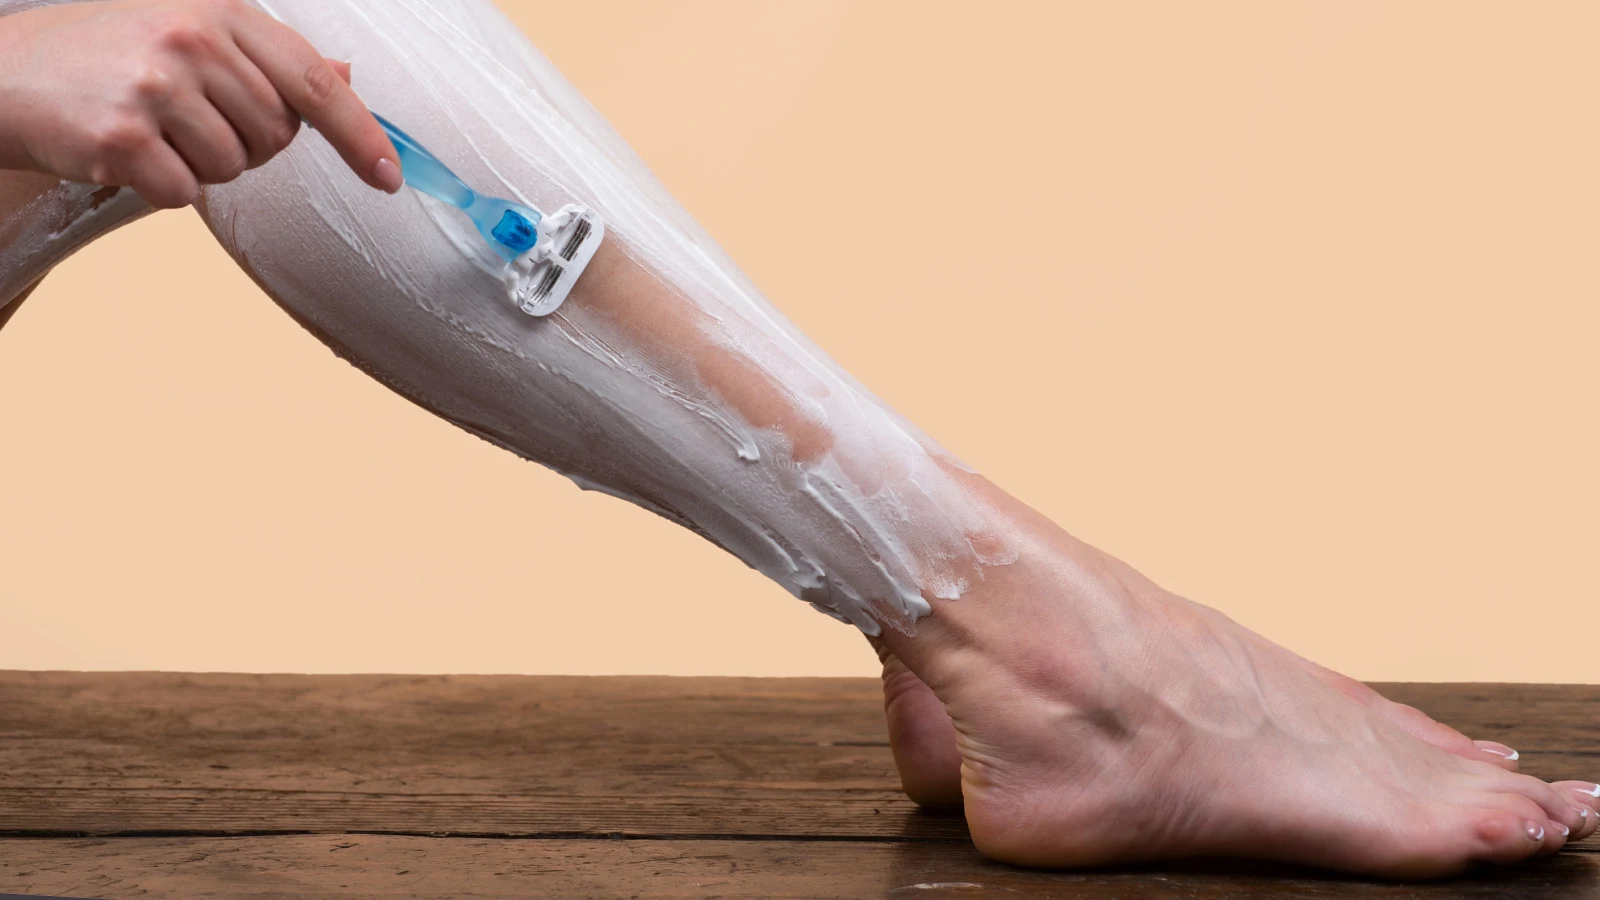 Woman shaving her leg with shaving gel